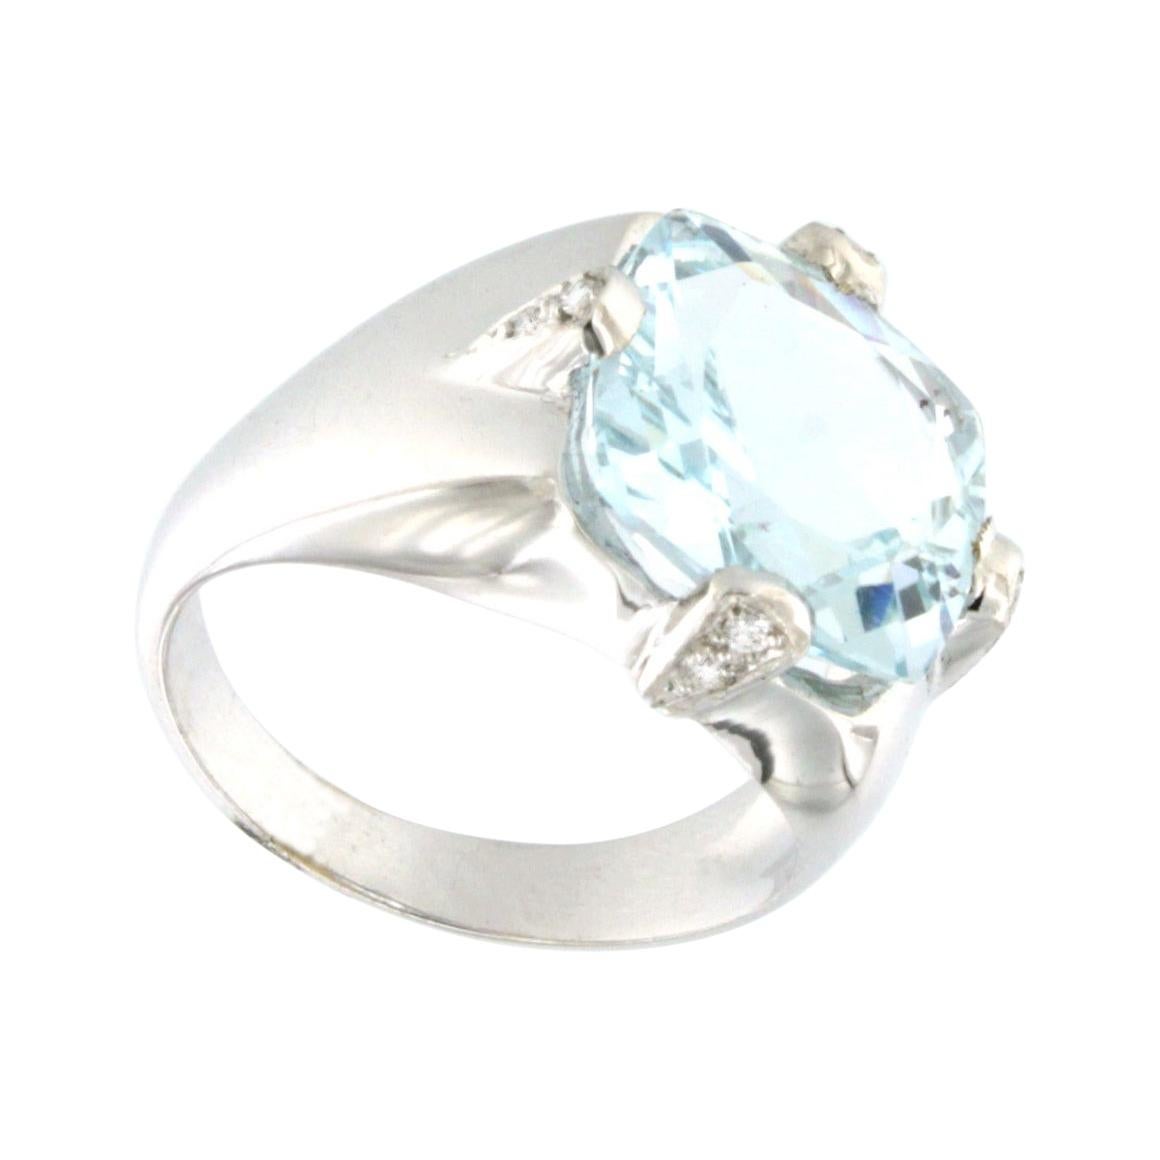 18k White Gold with Aquamarine and White Diamonds Ring